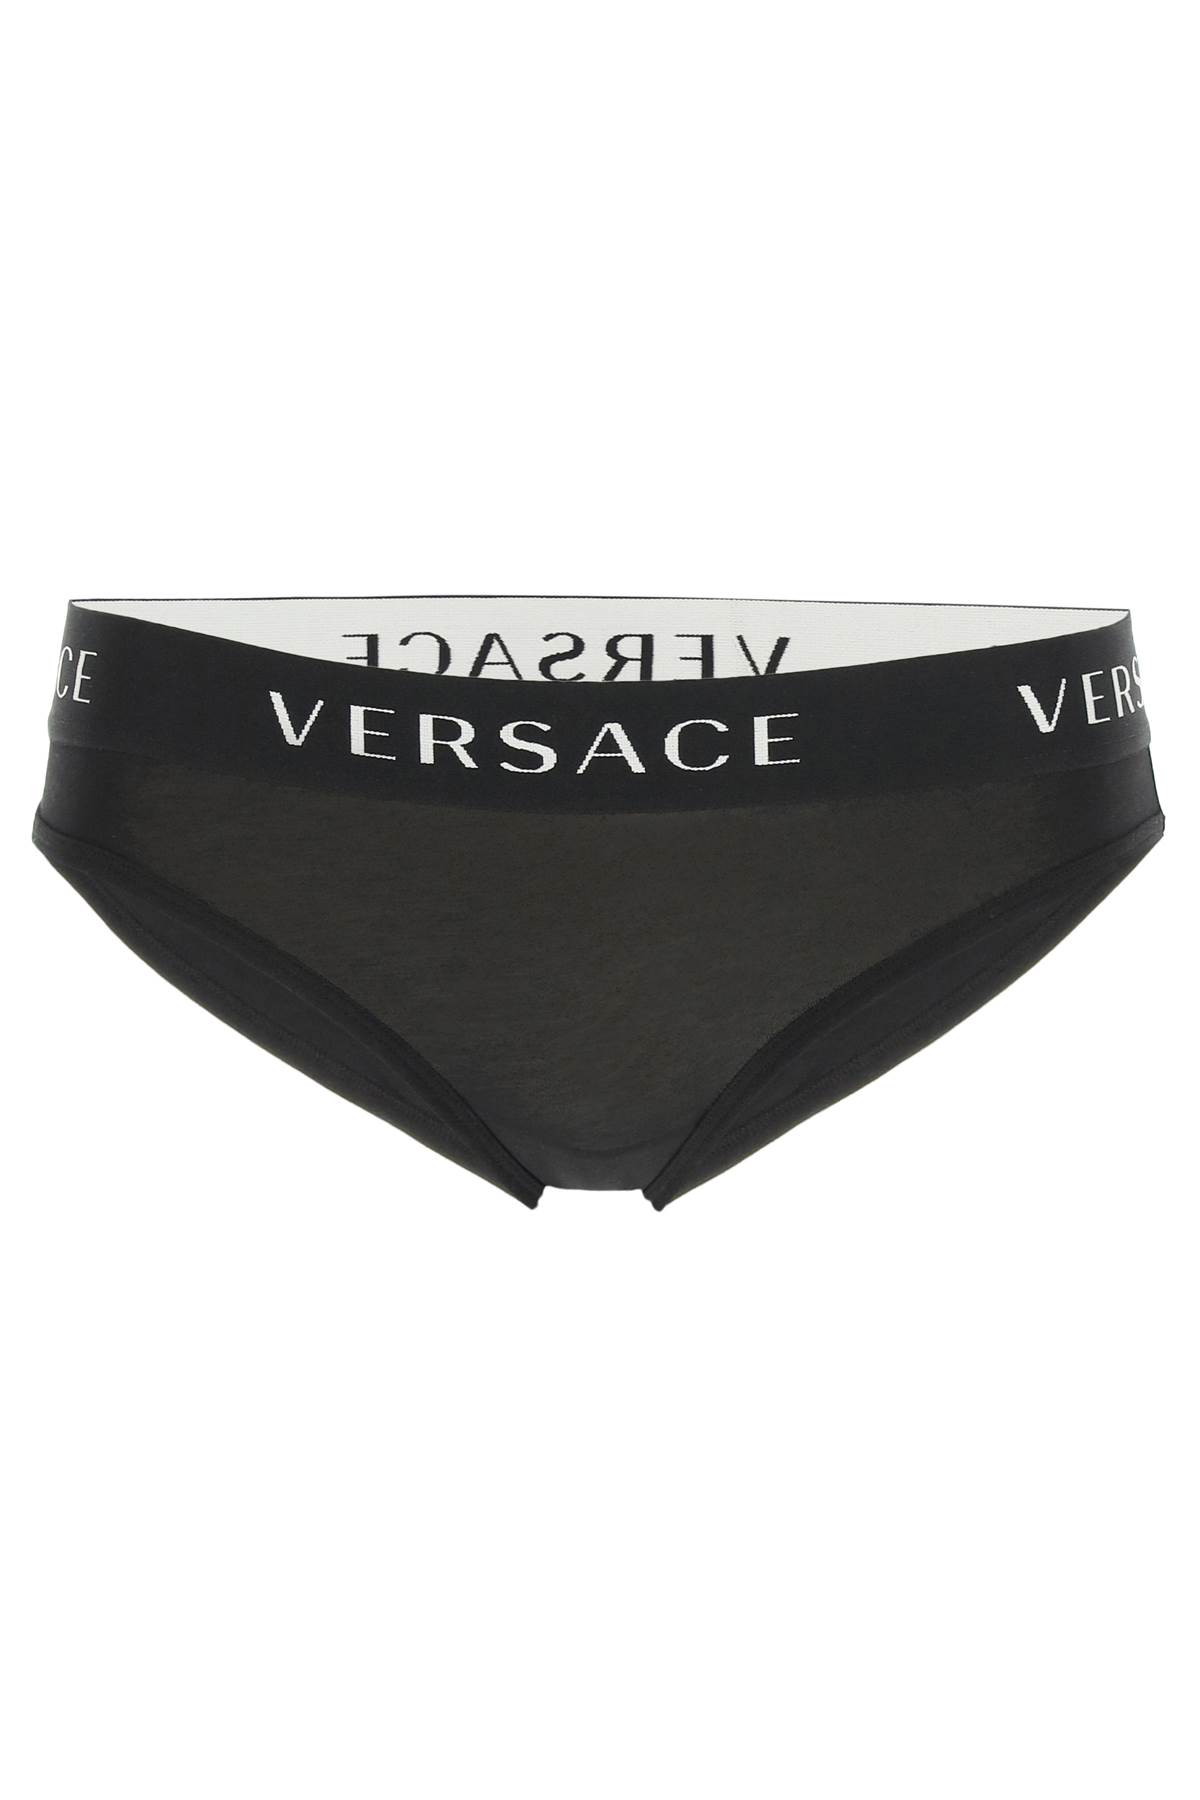 Versace Cotton Underwear Briefs